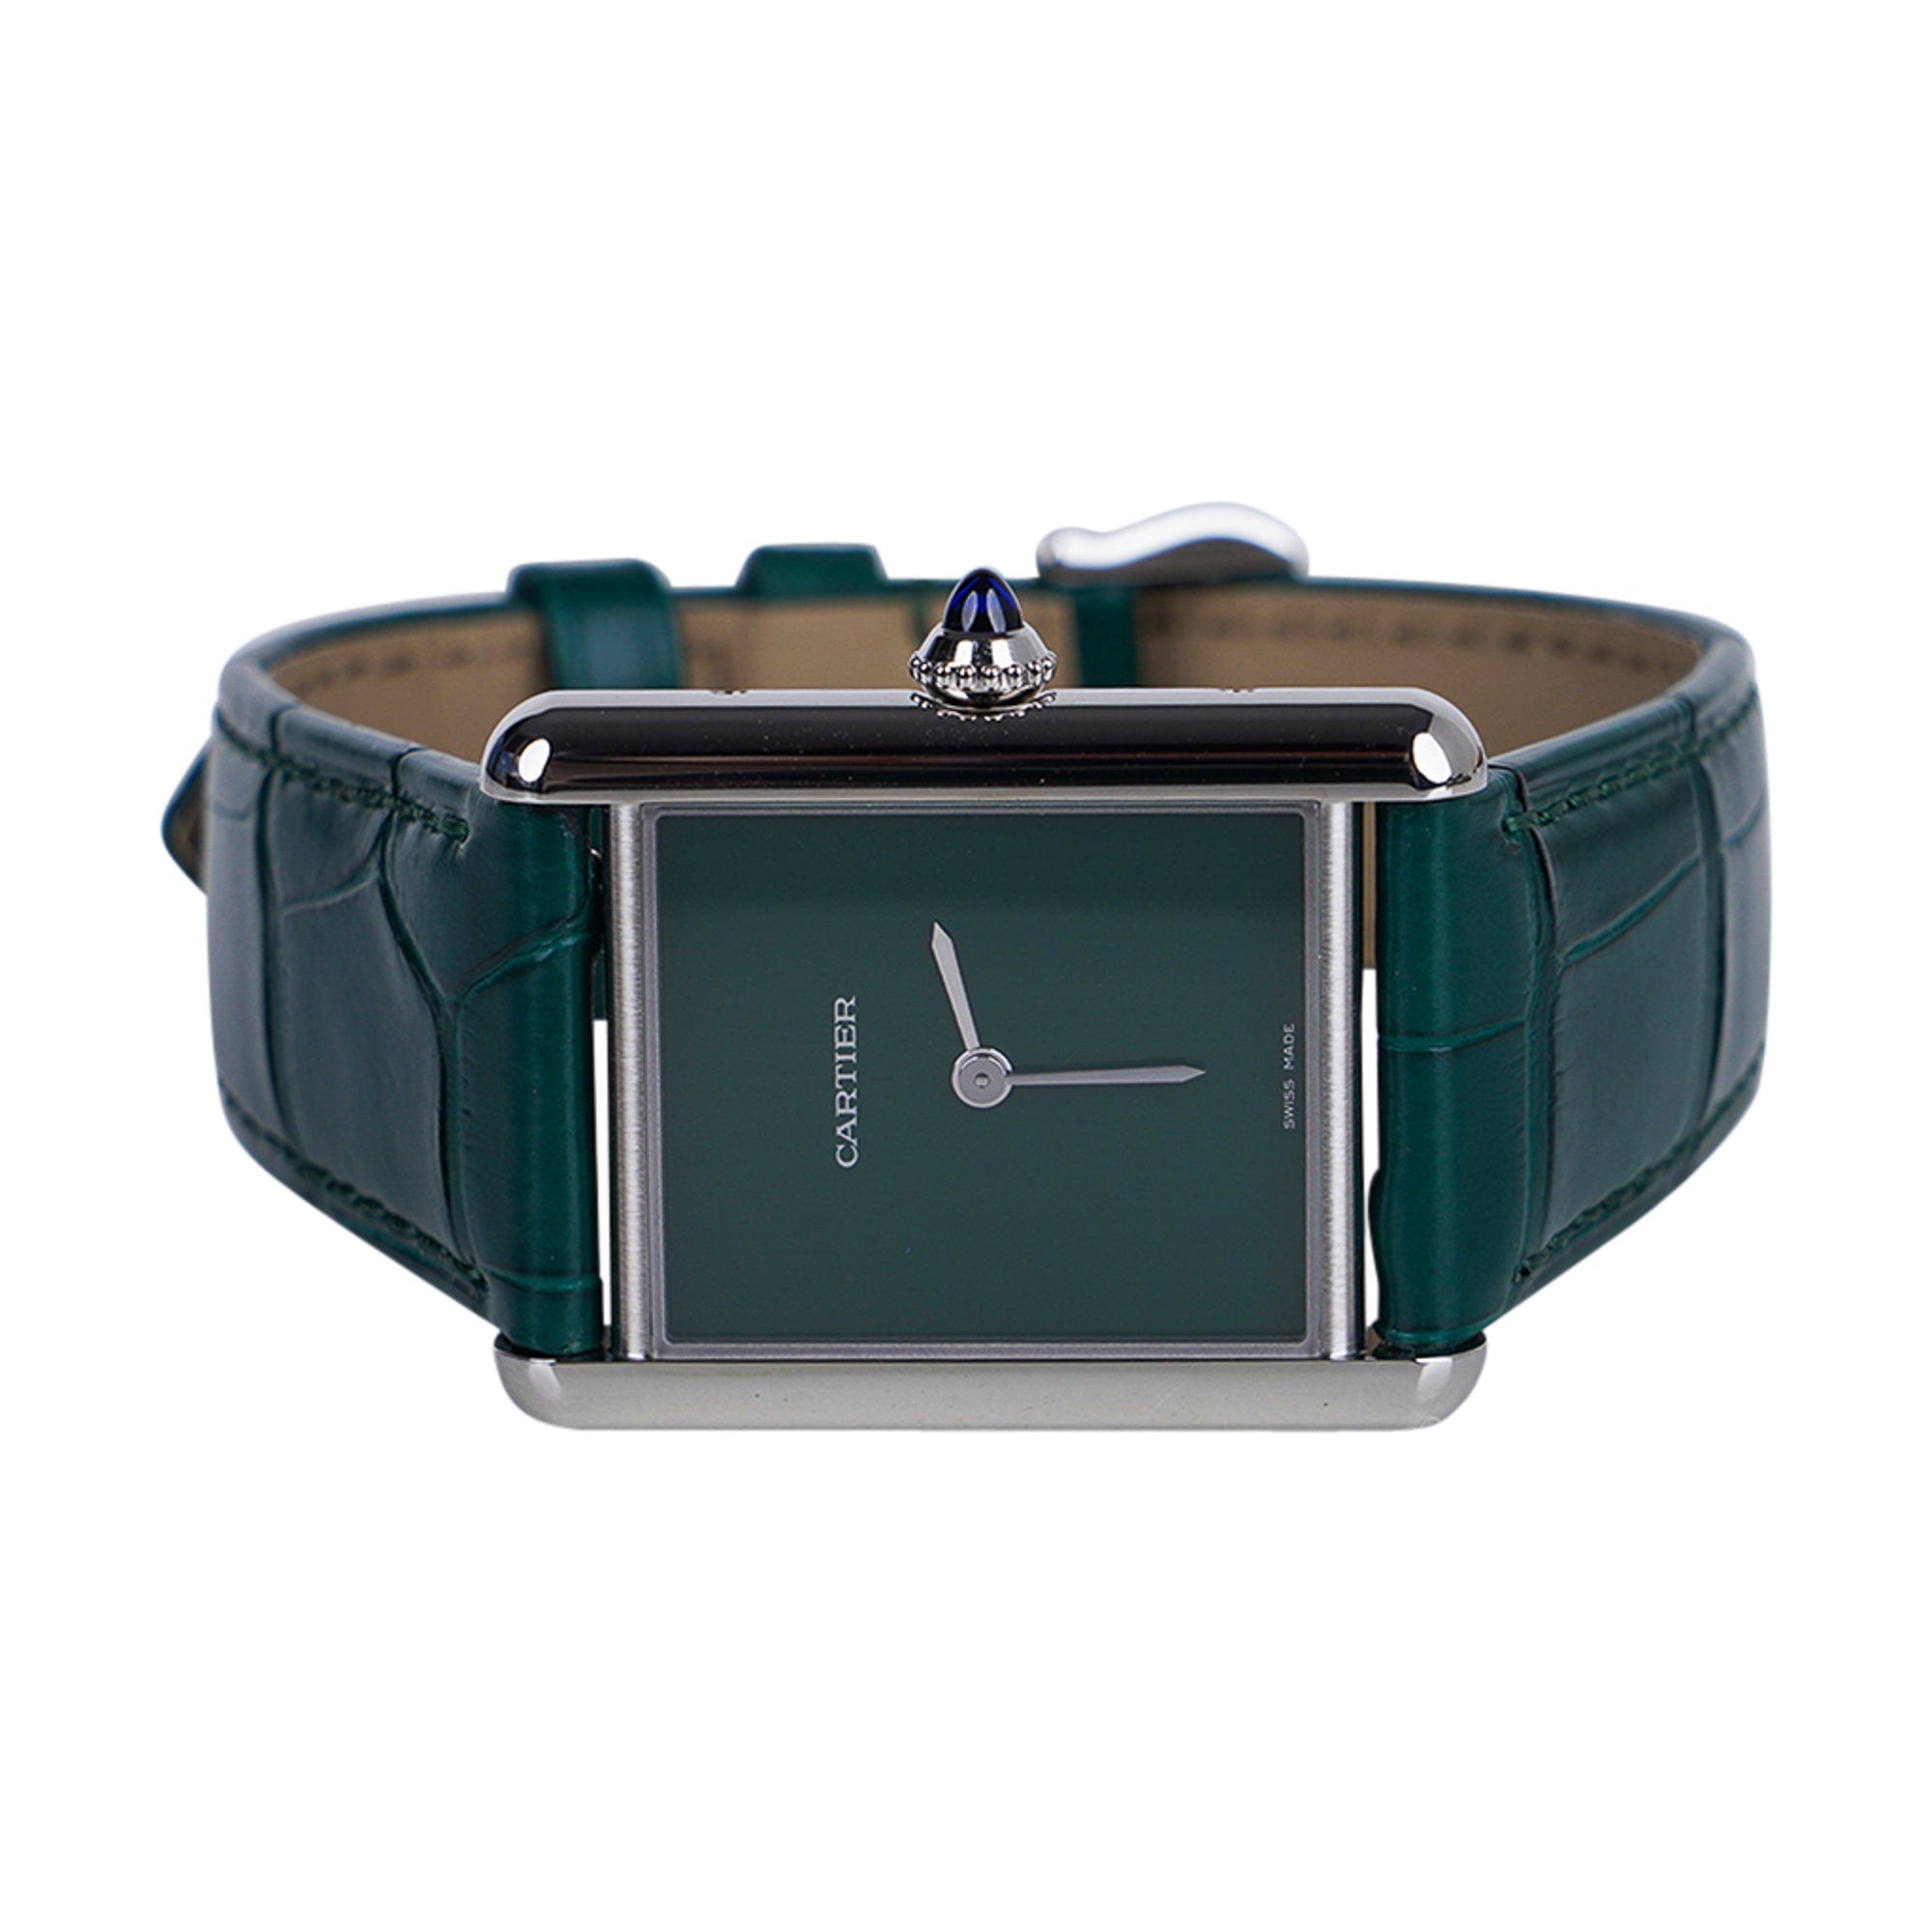 Cartier Tank Must de Cartier Watch Green 2021 Limited Edition New w/ Box